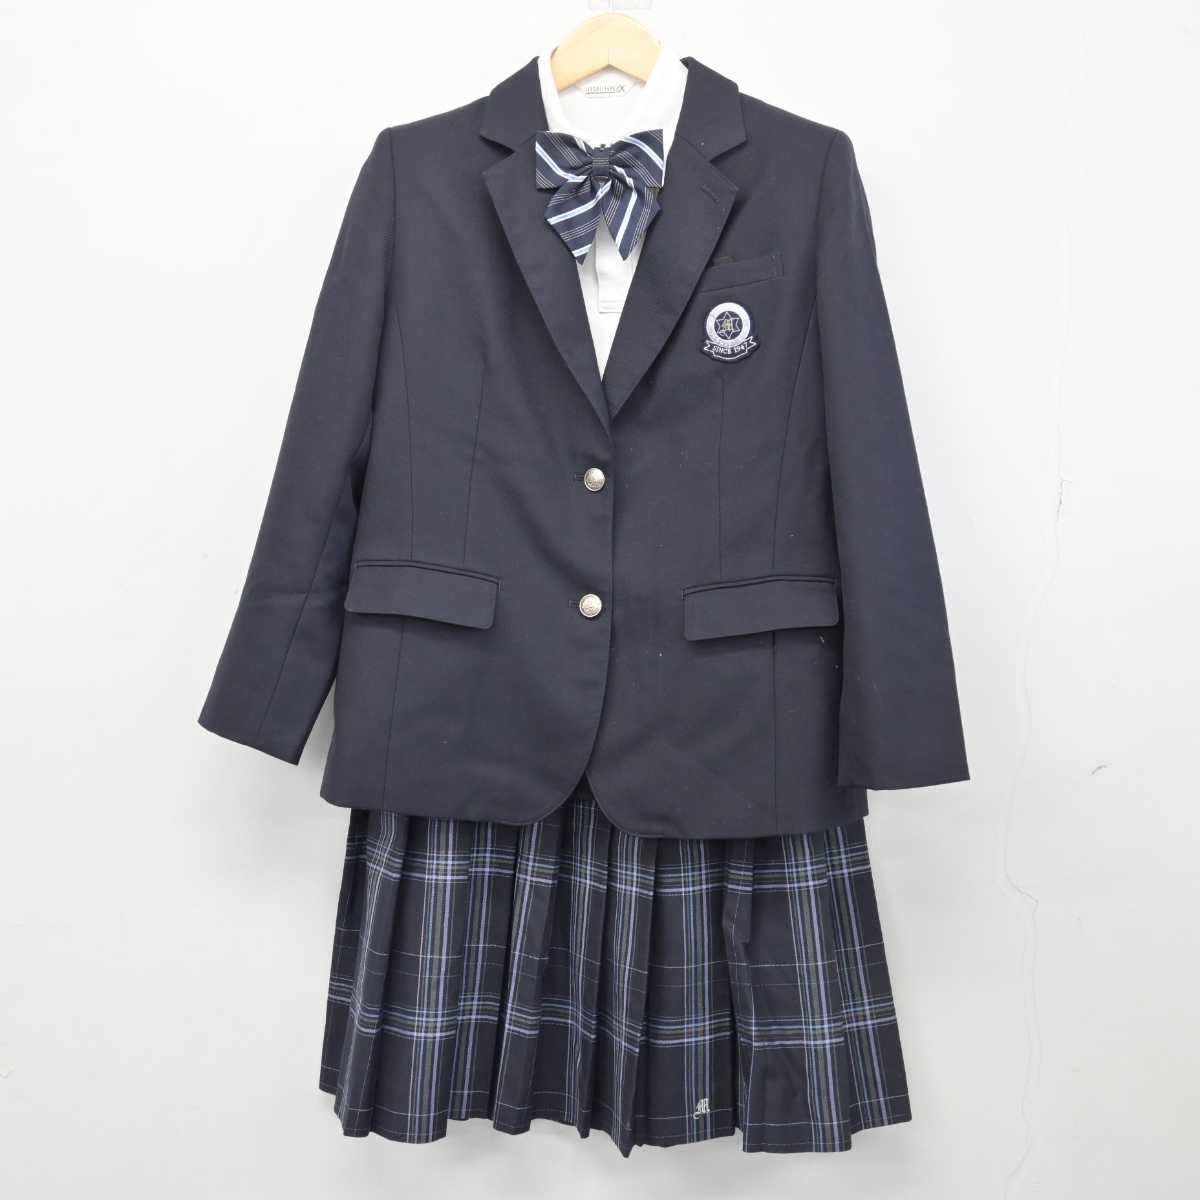 日本買蔵愛知県 額田中学校 女子制服 4点 sf009962 学生服